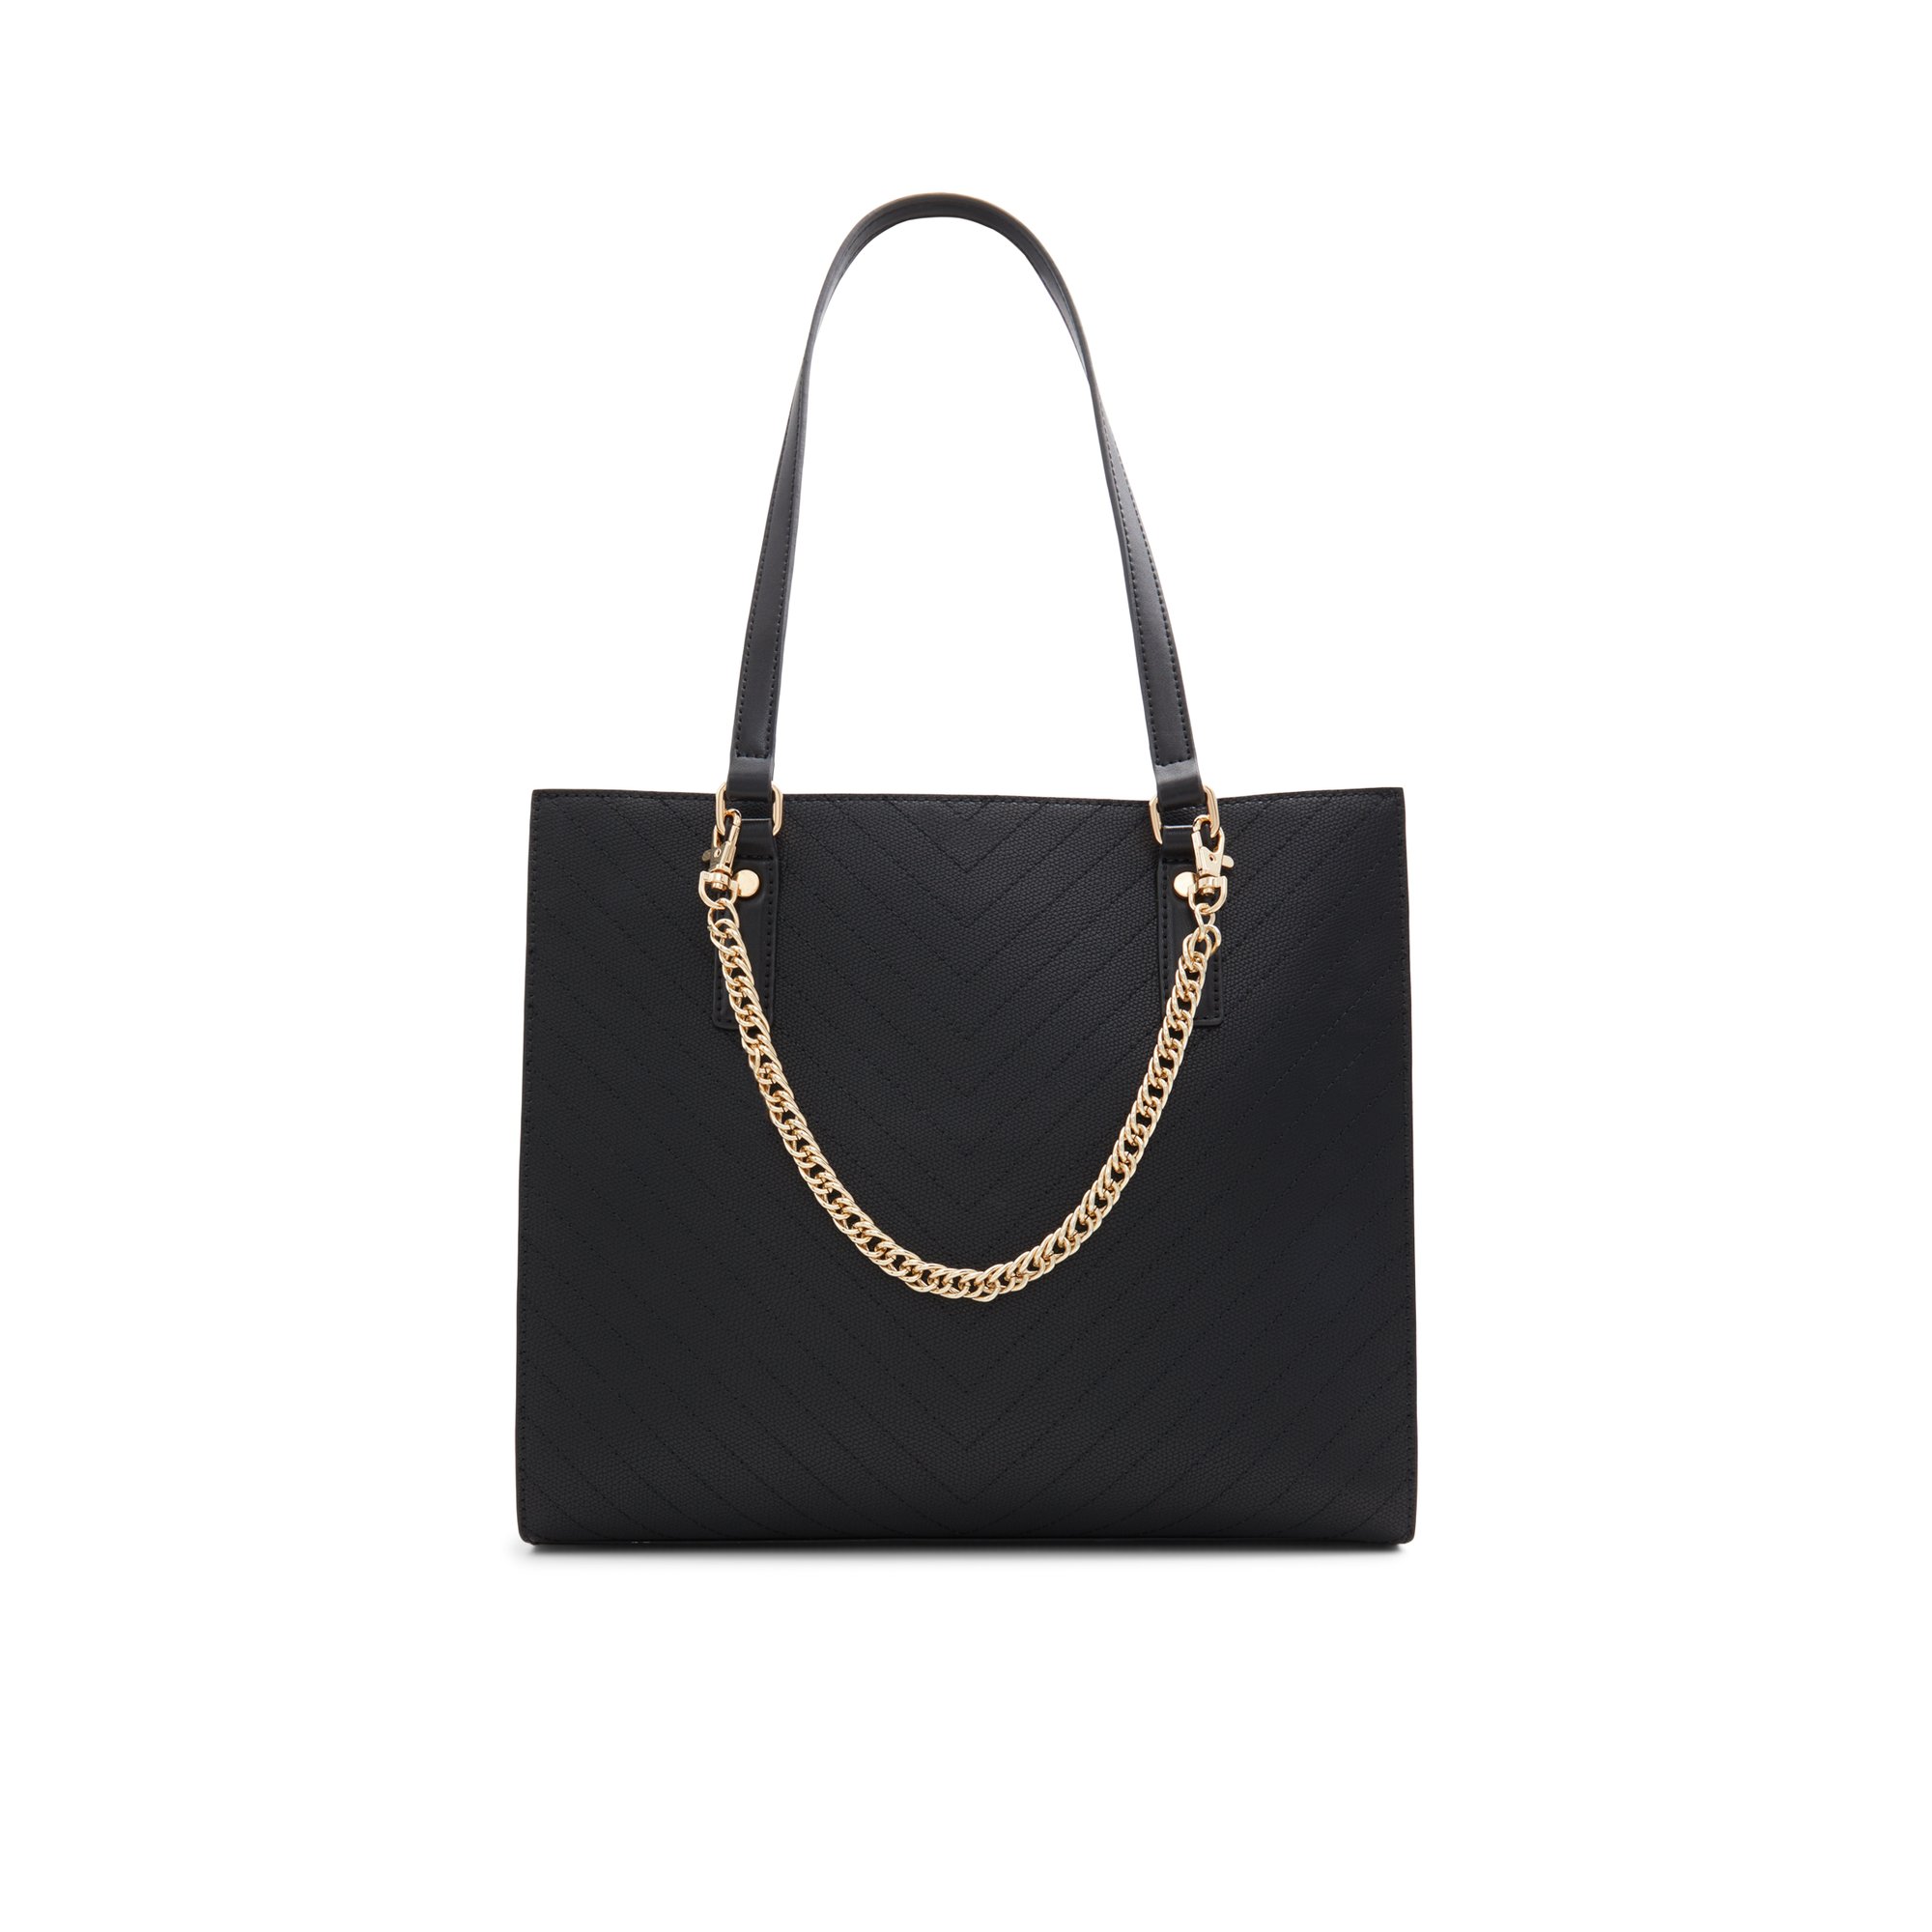 ALDO Zaveriix - Women's Tote Handbag - Black